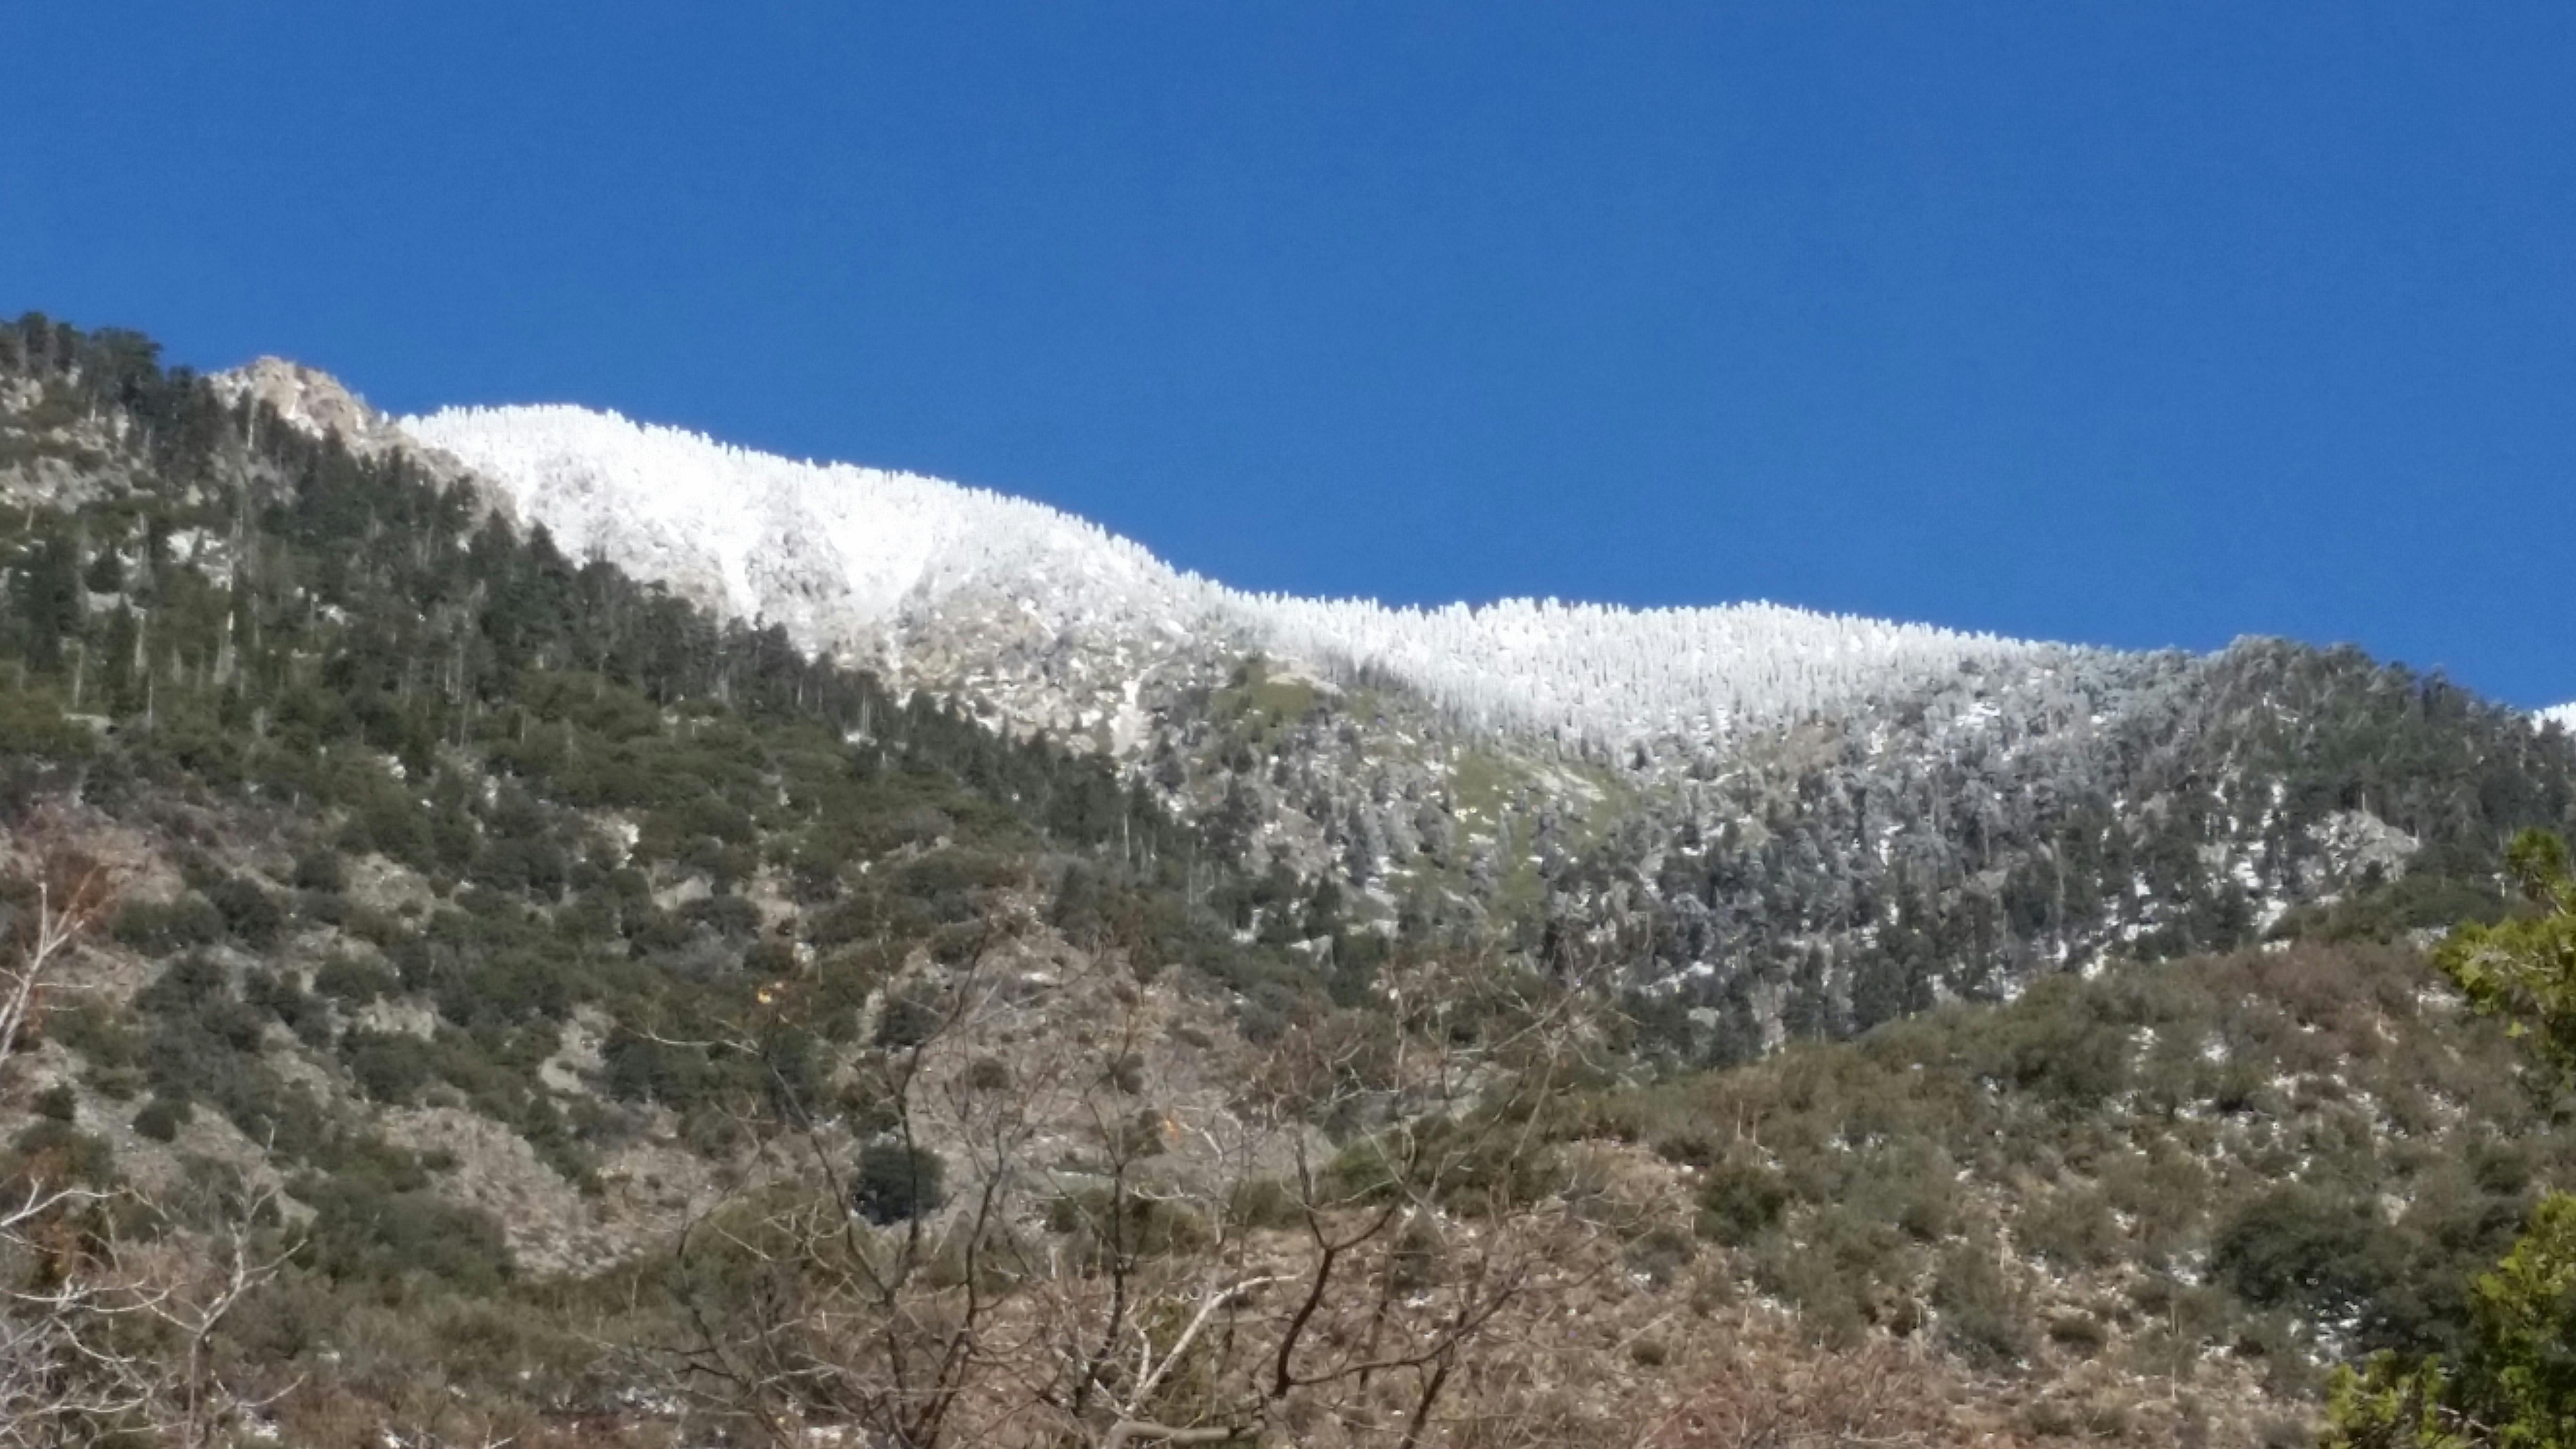 Free stock photo of mountain, mountain view, snow capped mountains